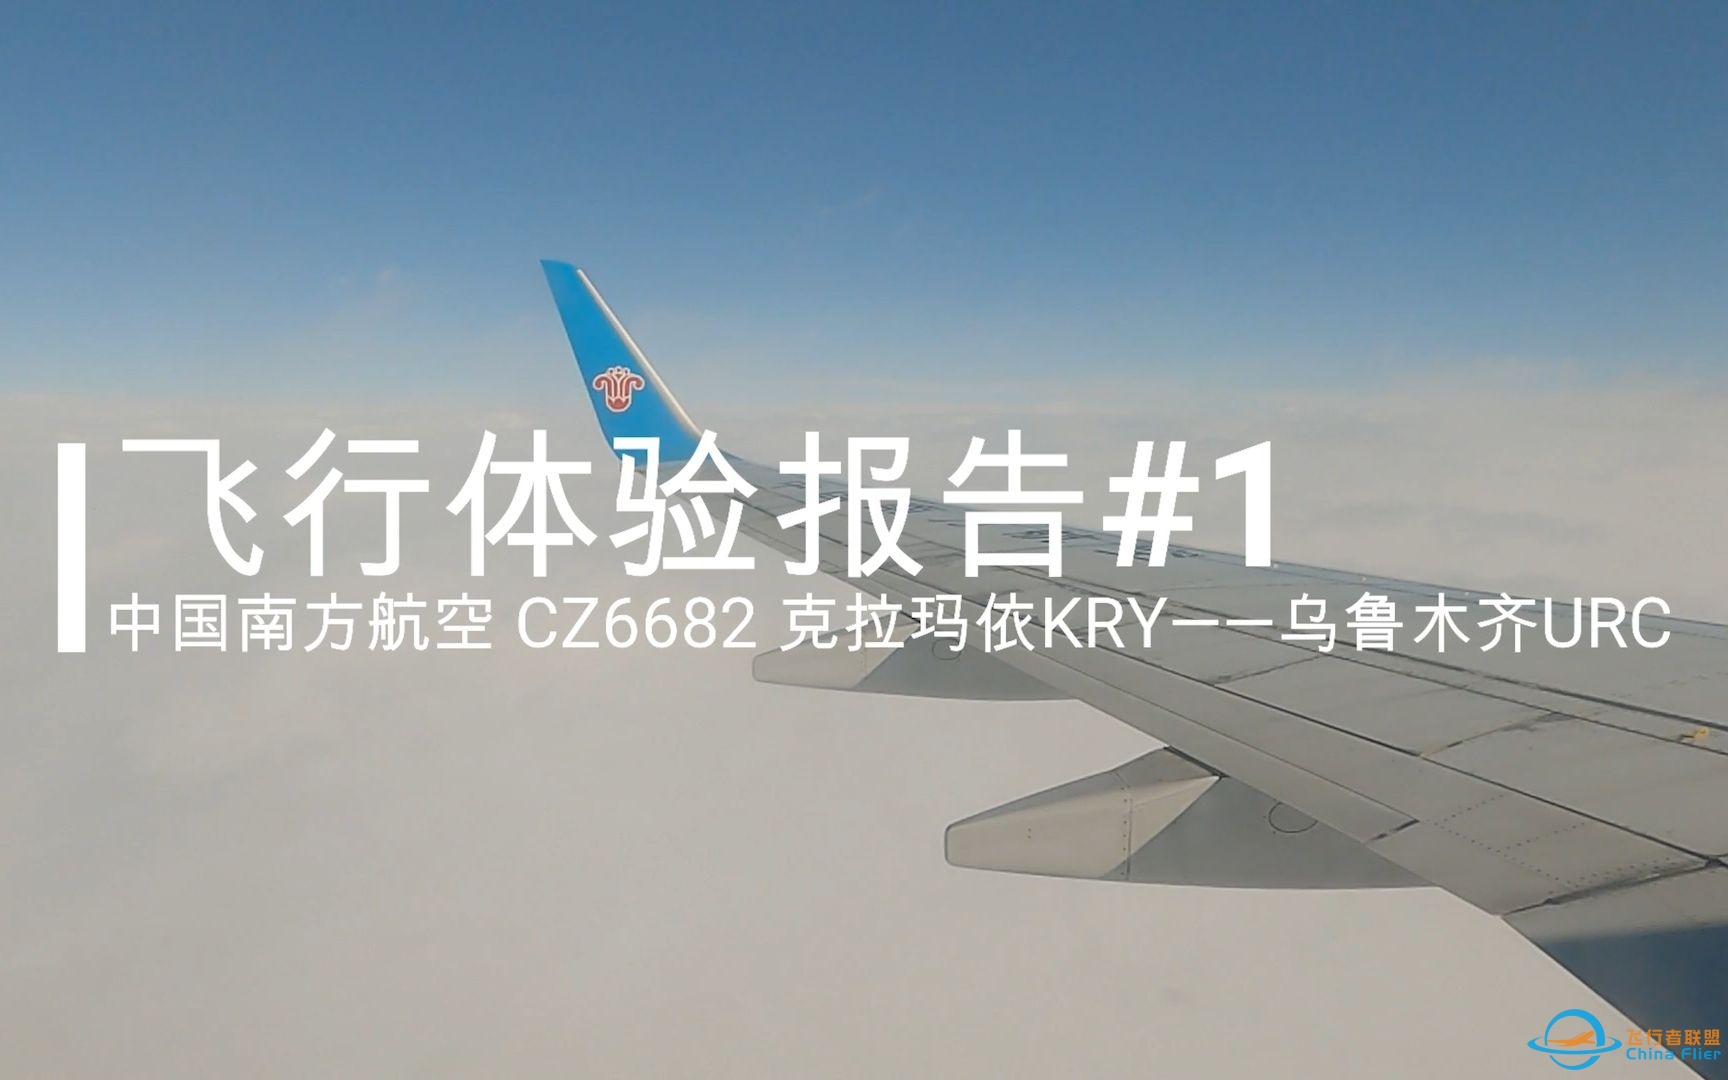 【飞行体验报告#1】中国南方航空CZ6682 克拉玛依KRY——乌鲁木齐URC 经济舱飞行体验-3533 